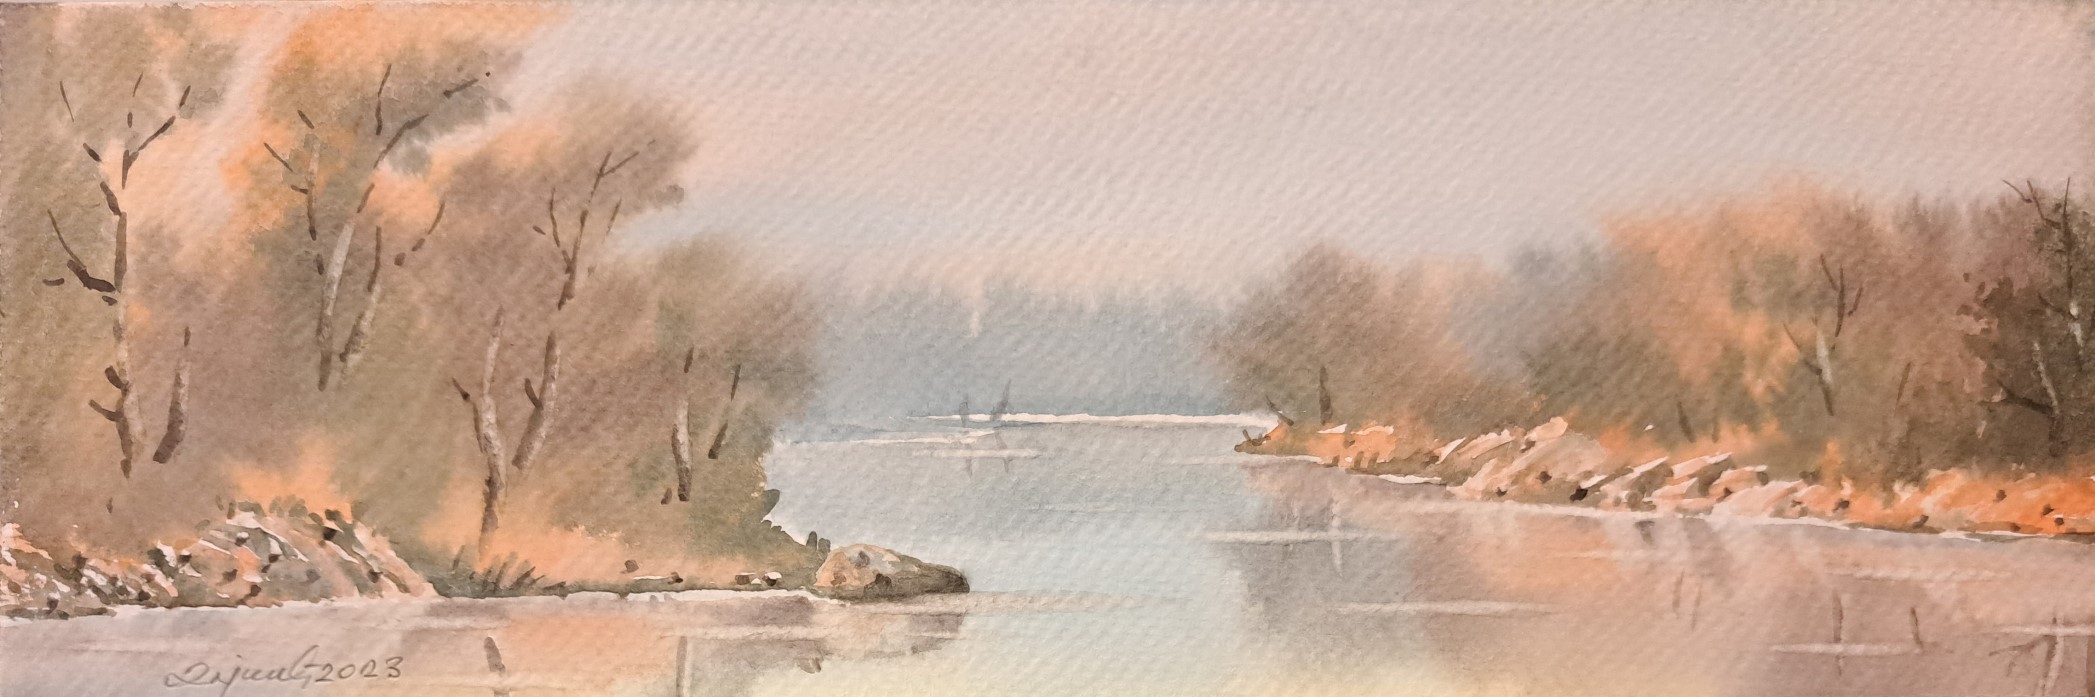 Pokraj reke 3, Predrag Dojkić, 10×30 cm, akvarel na papiru, sertifikat, 30 eura